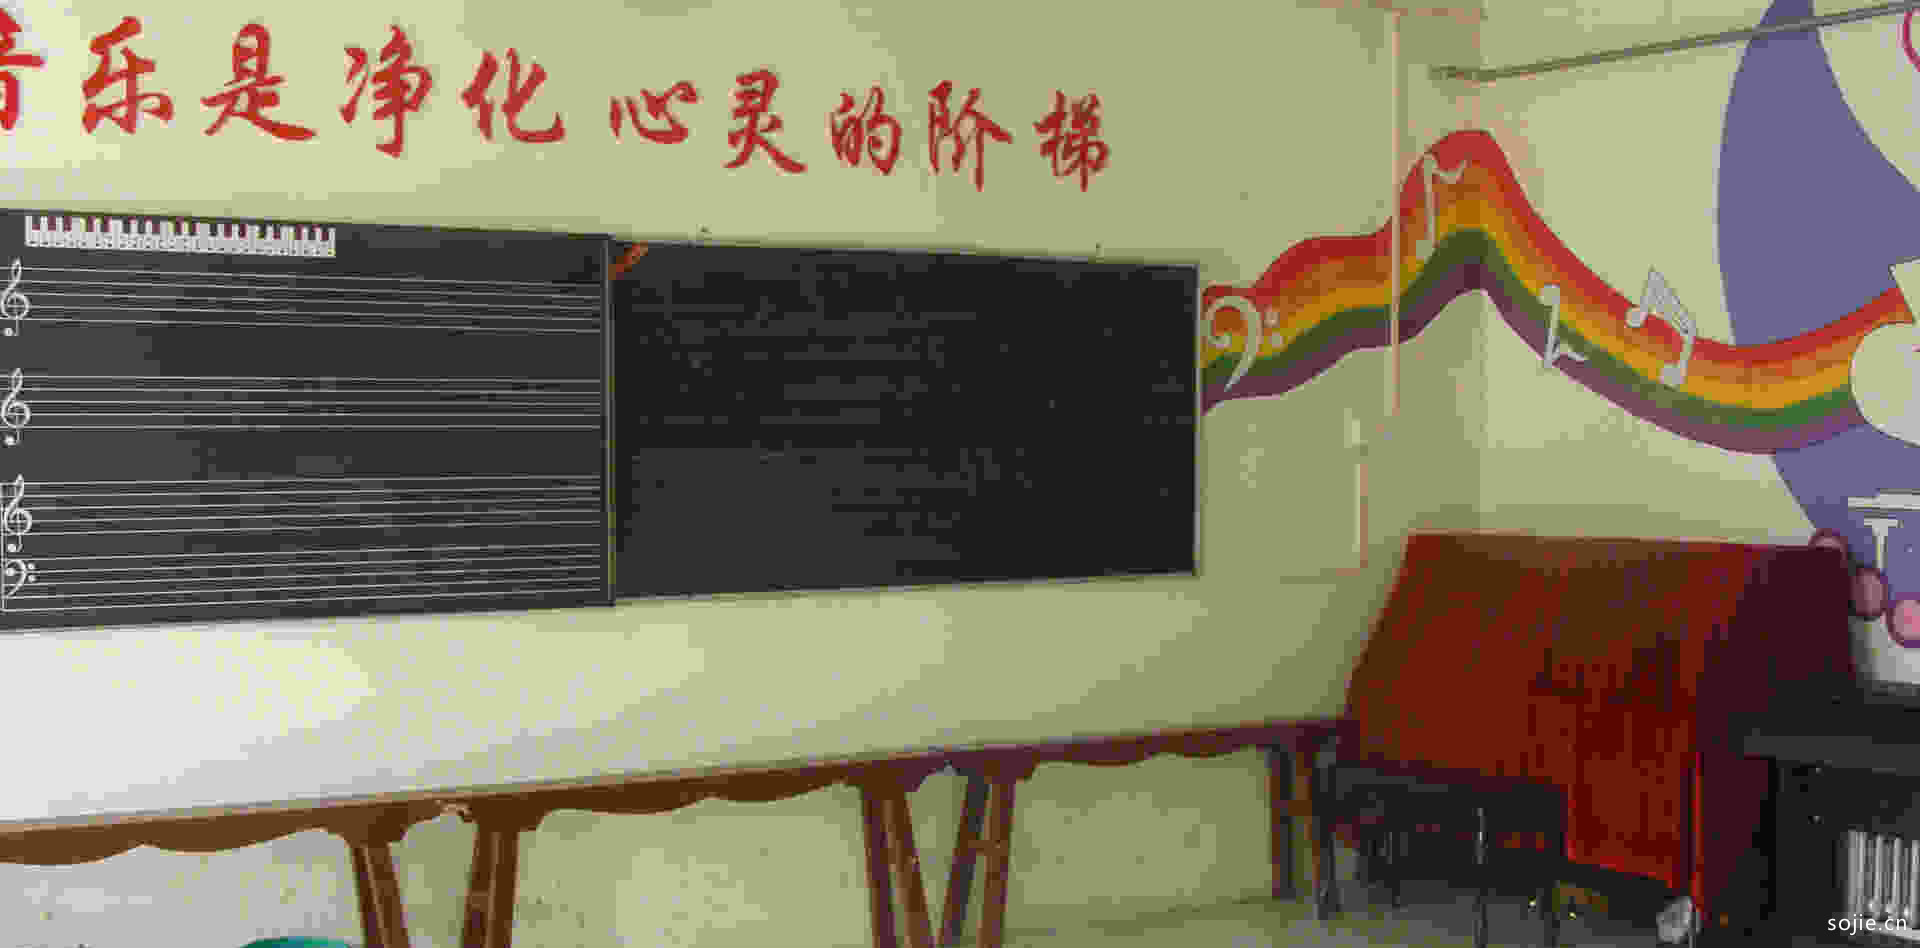 4款音乐教室装修效果图 音乐教室专用凳墙面标语设计图